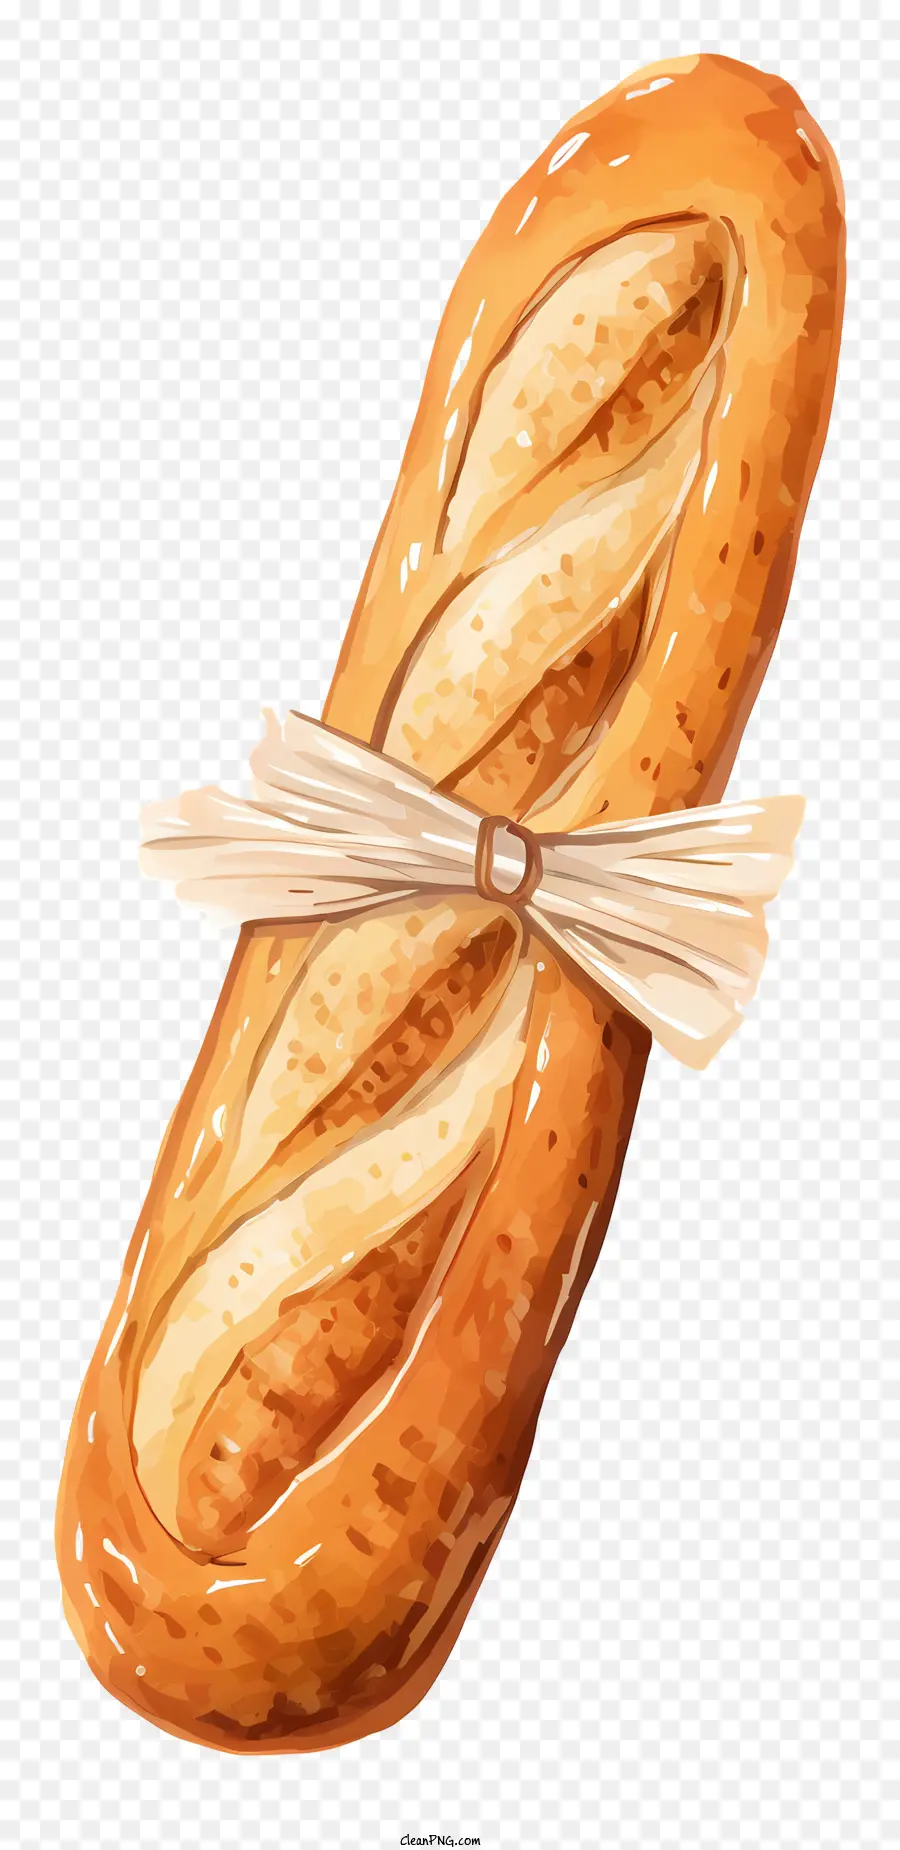 bánh mì baguette bột mì giòn mềm - Baguette với băng; 
Bánh mì nướng, giòn, mịn